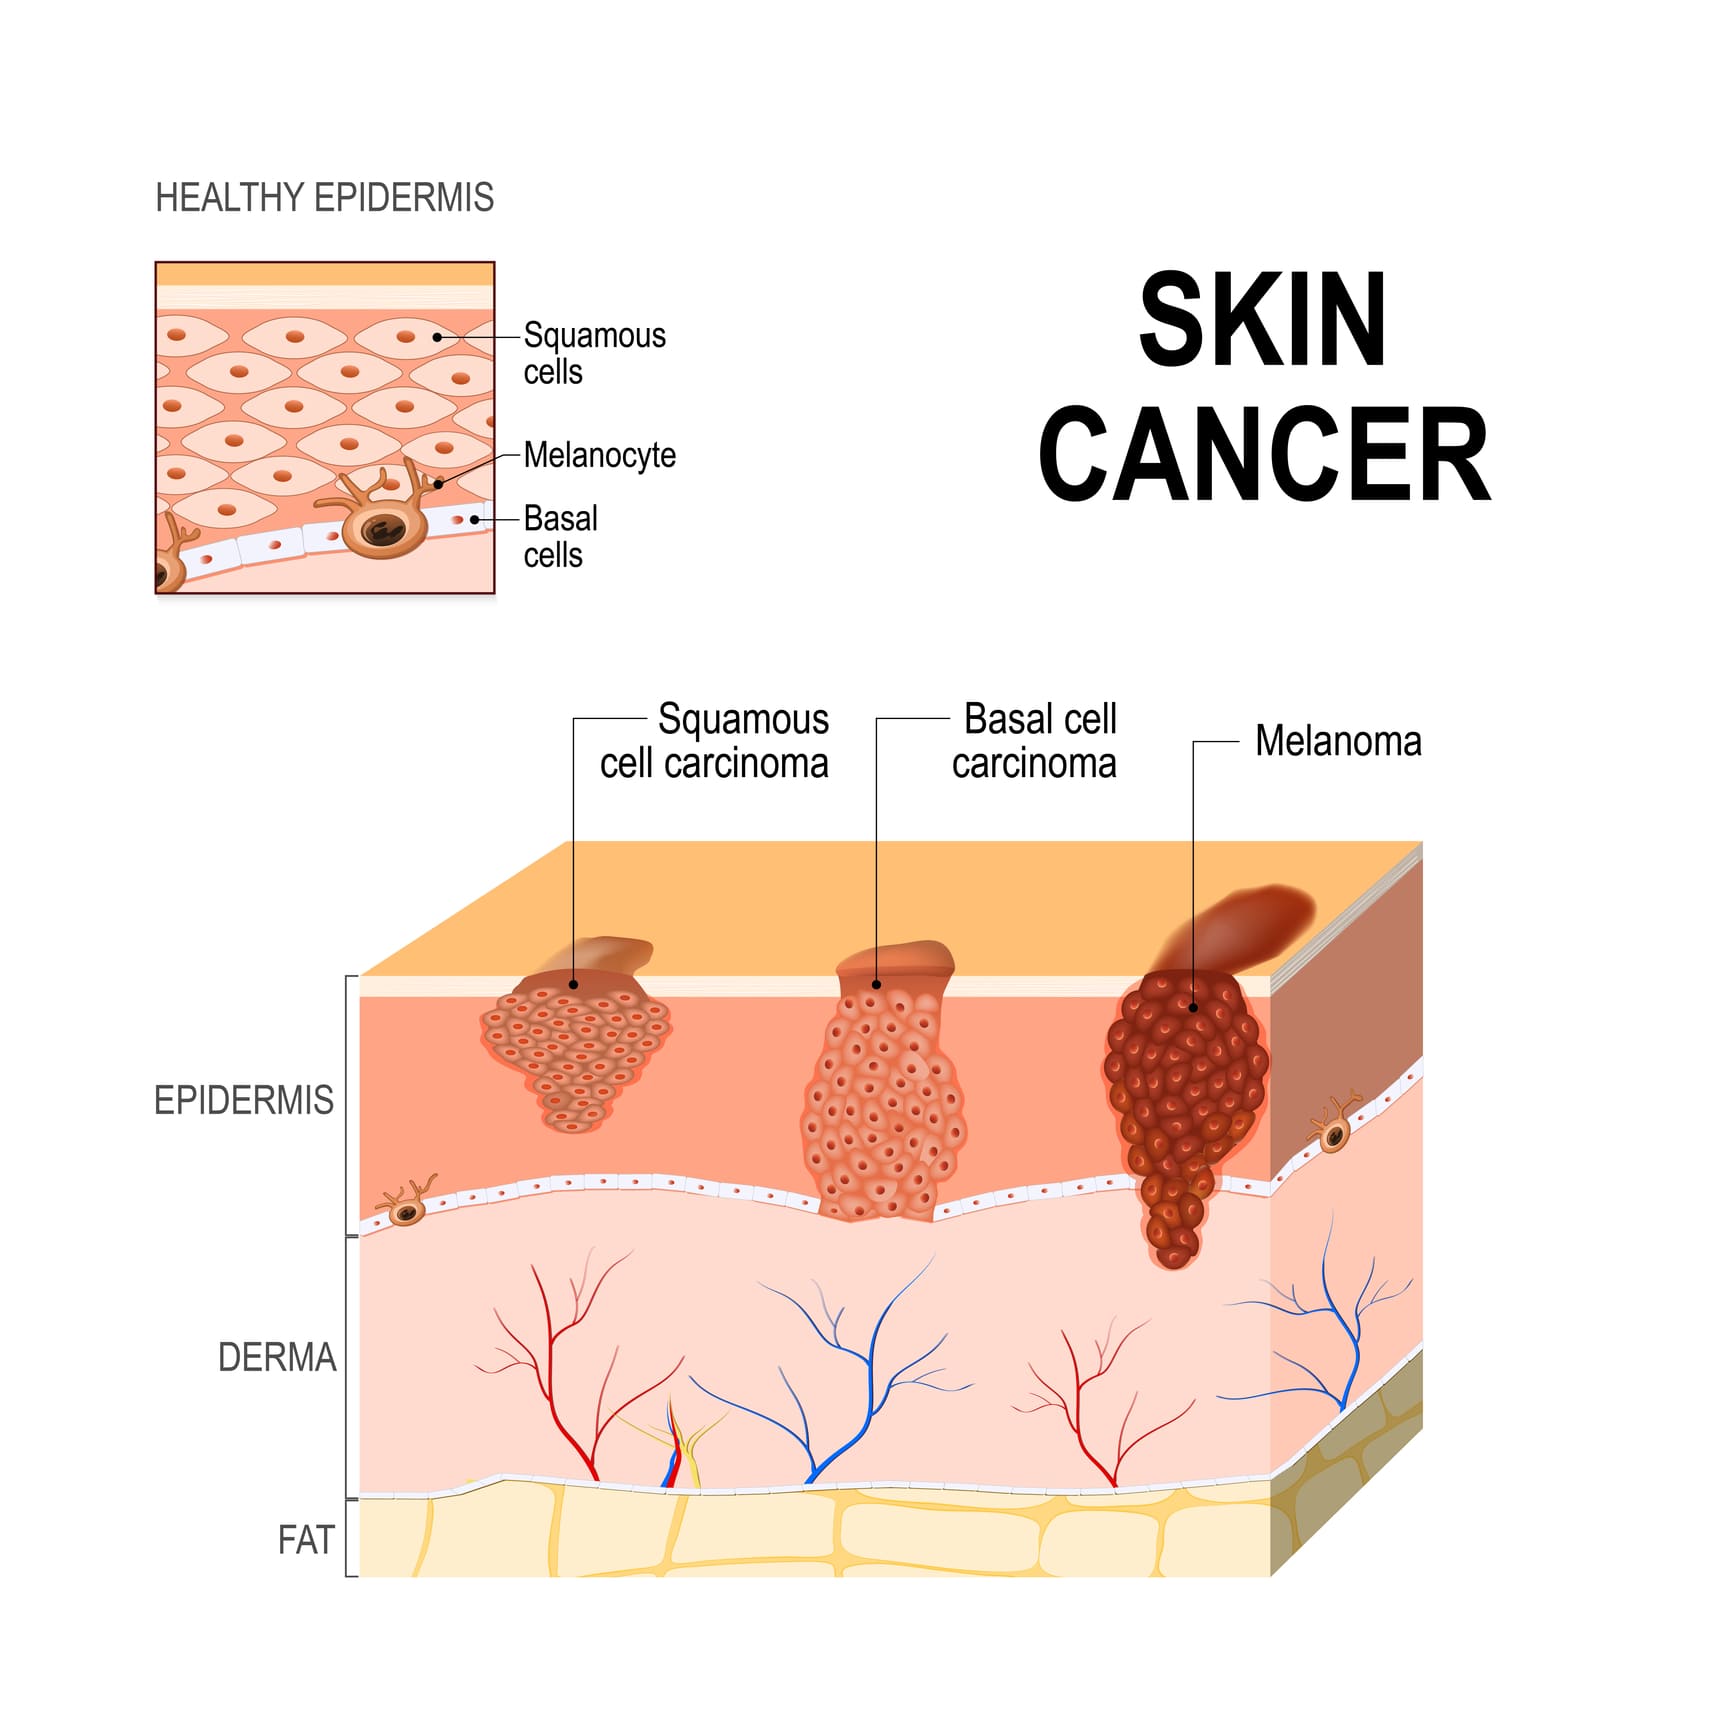 Рак кожи